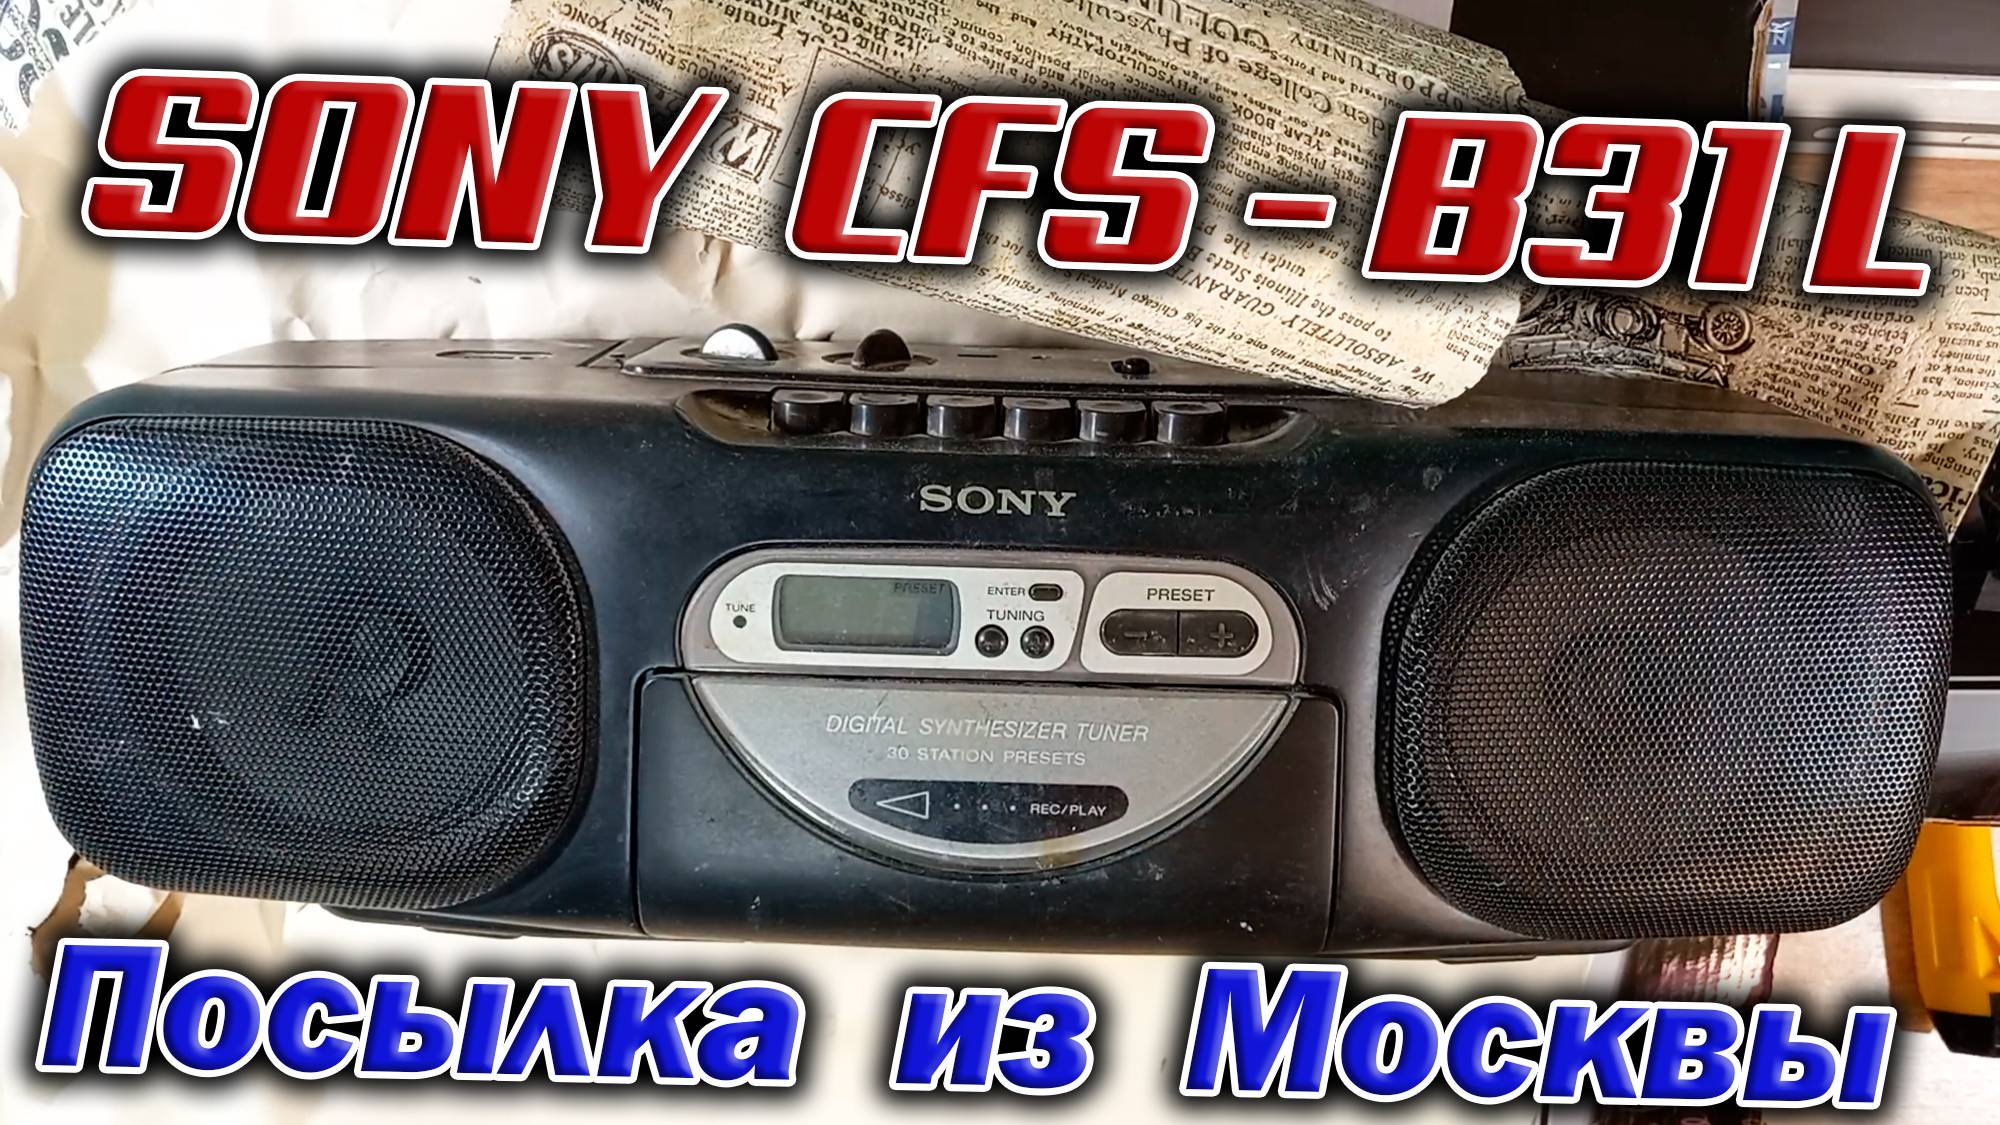 Пришла из Москвы посылка, а в ней магнитола Sony CFS-B31L 1997 года выпуска. Пополнение коллекции !